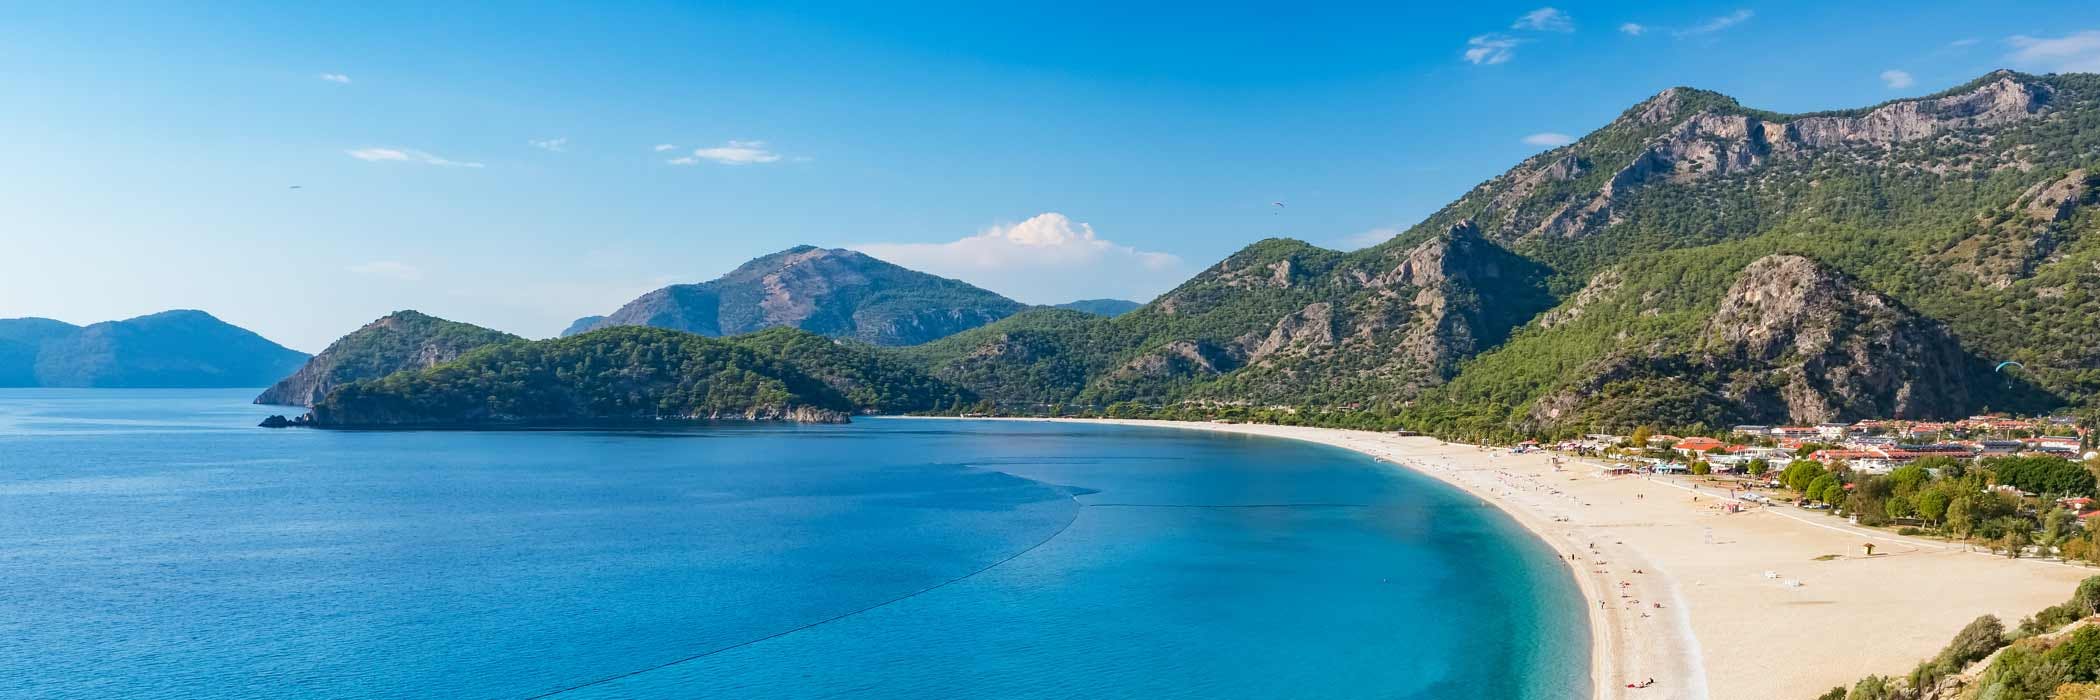 Olu Deniz, Turkey